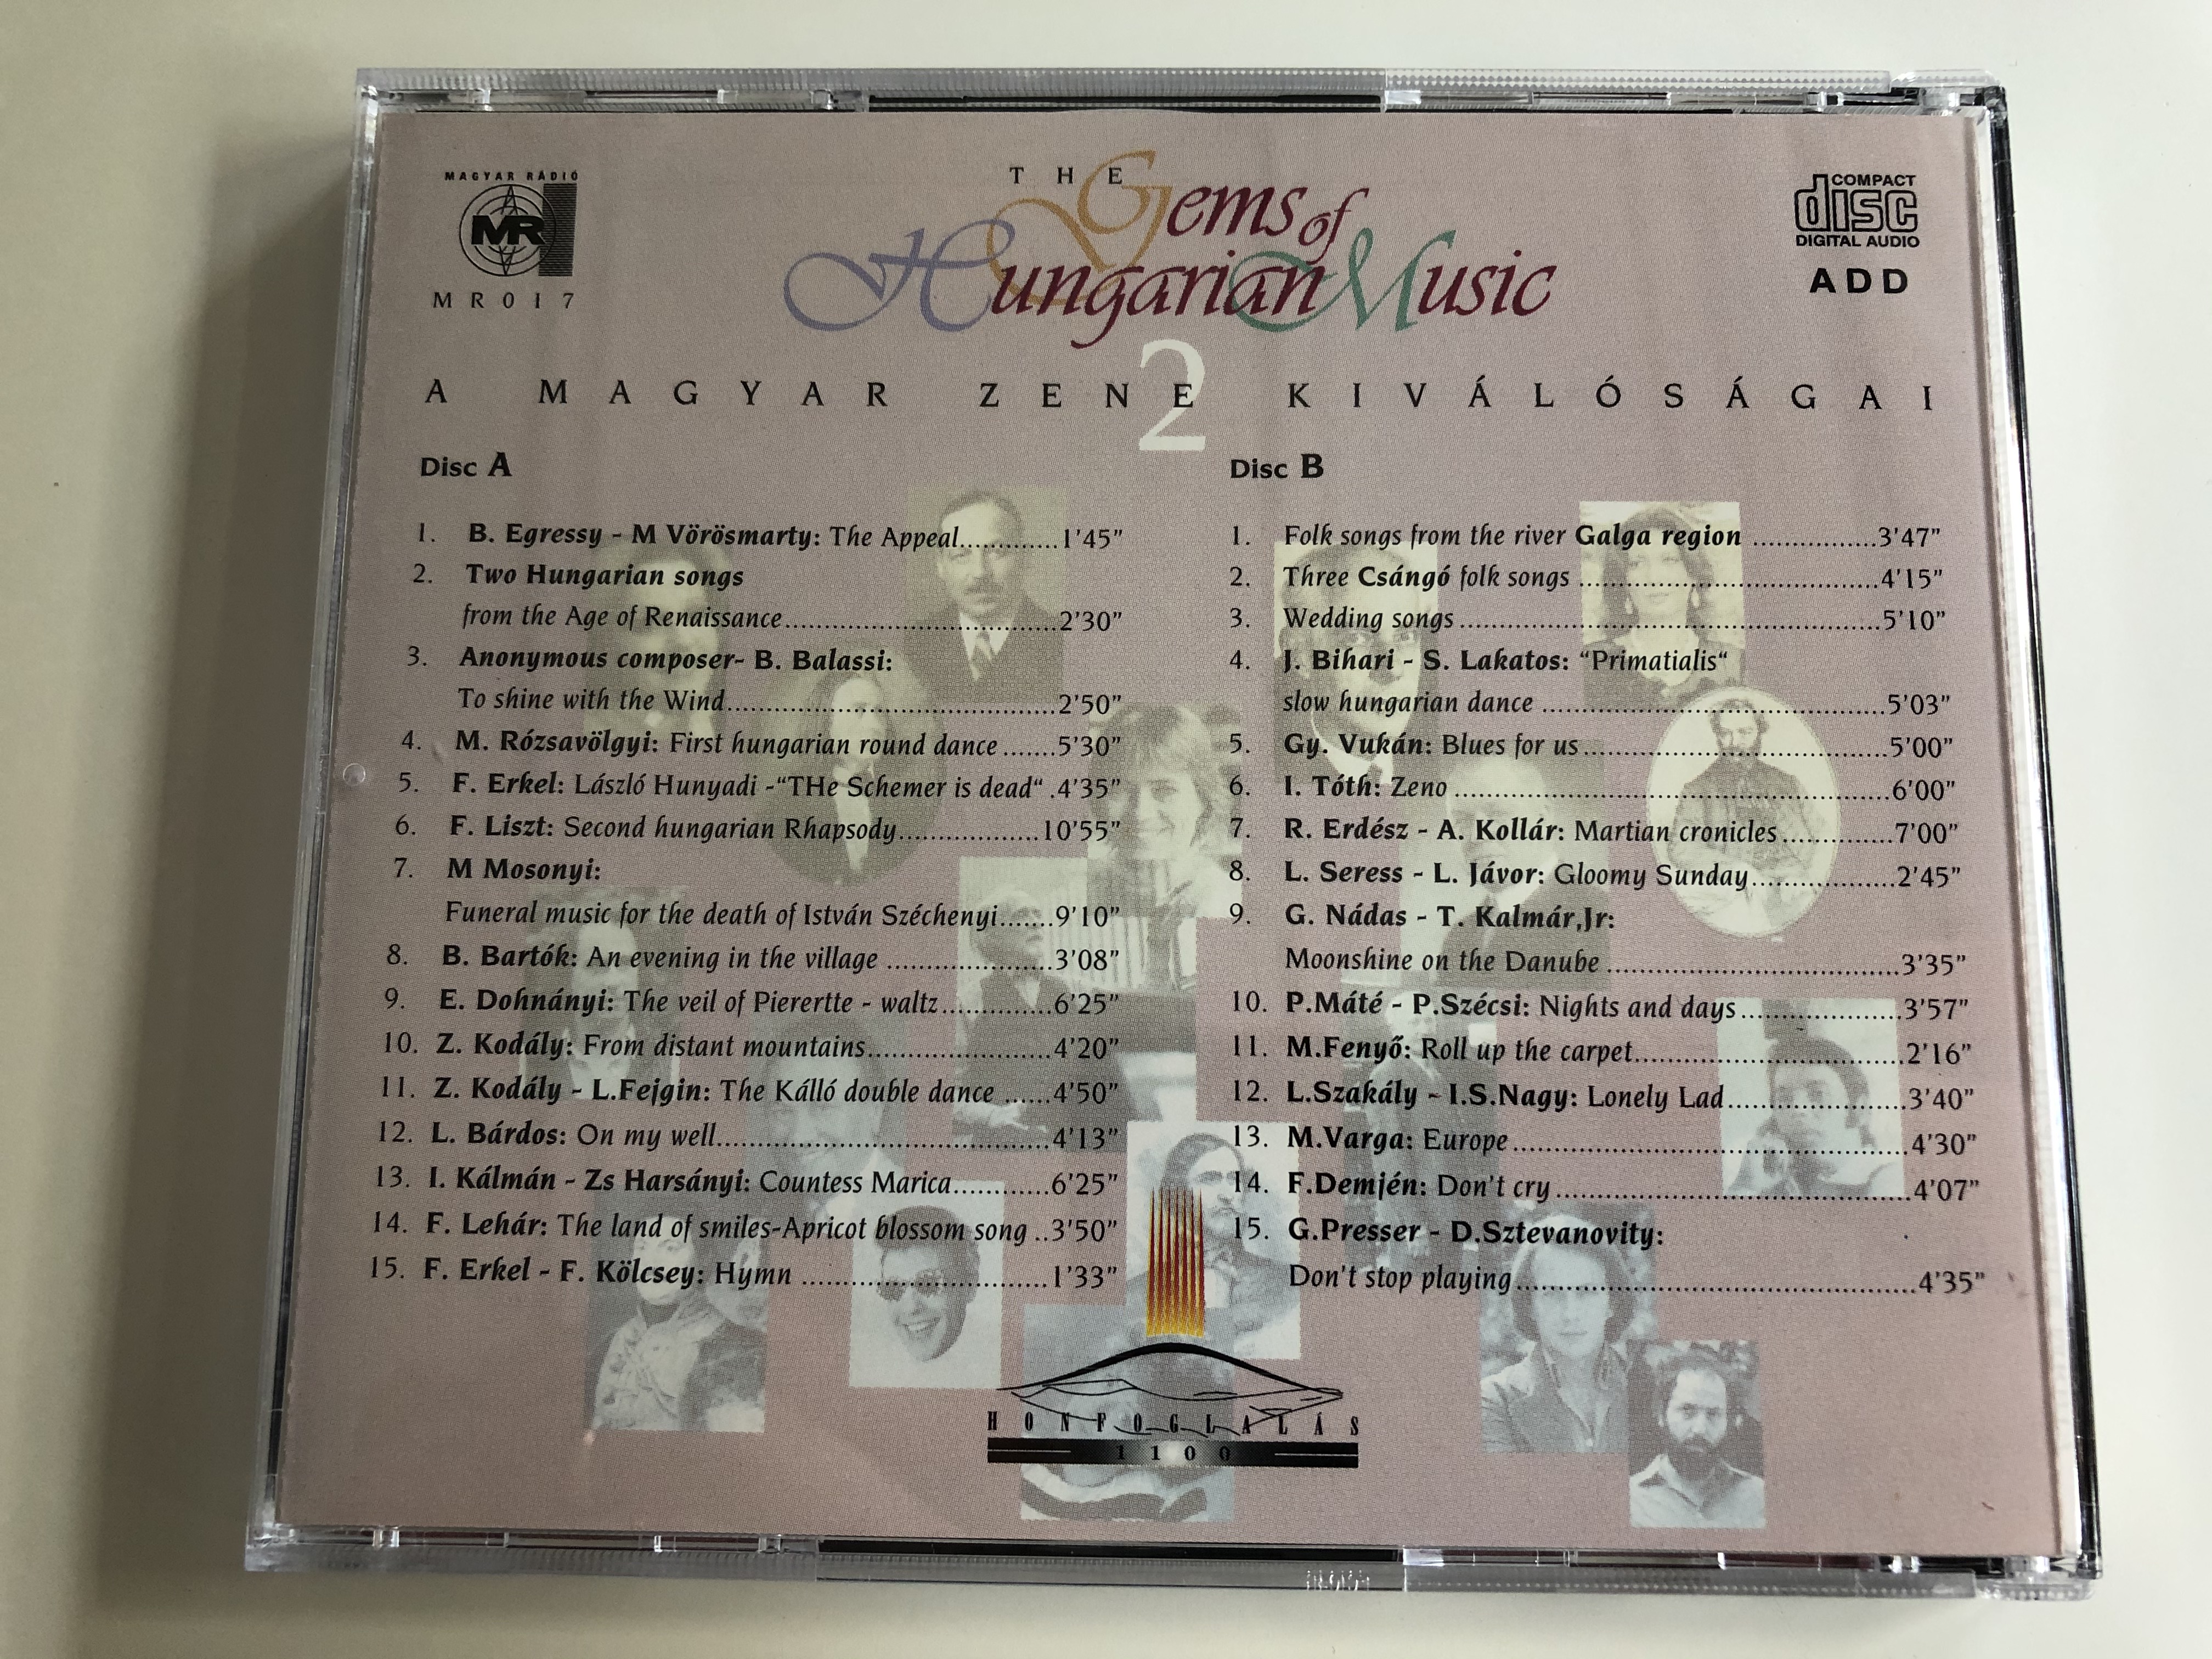 the-gems-of-hungarian-music-2-a-magyar-zene-kivalosagai-magyar-radio-2x-audio-cd-1996-mr017-15-.jpg